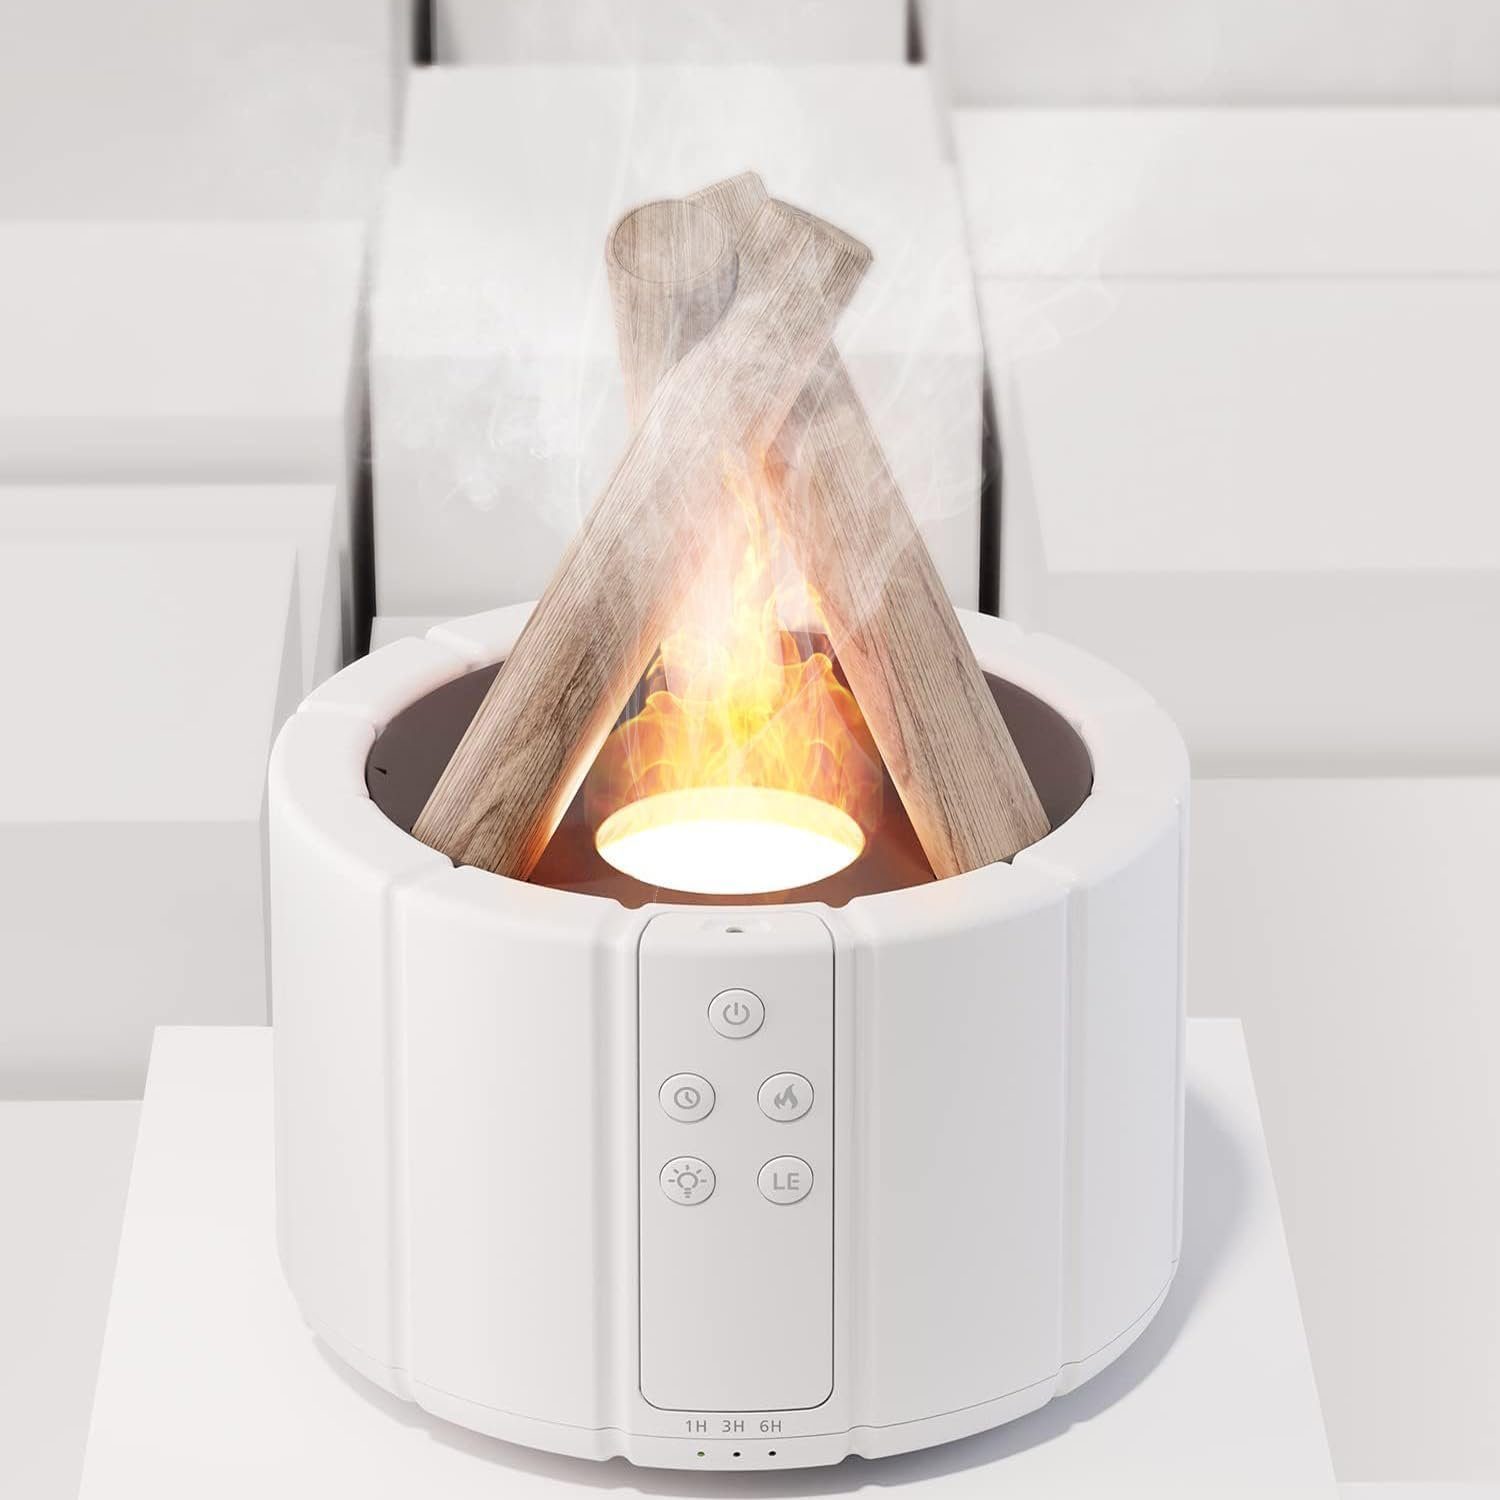 Bedee Diffuser Flame Aroma Diffuser für Ätherische Öle 250ml Lagerfeuer  Flammeneffekt, 0,25 l Wassertank, mit 3 Helligkeit Modi, mit Fernbedienung,  3 Timer